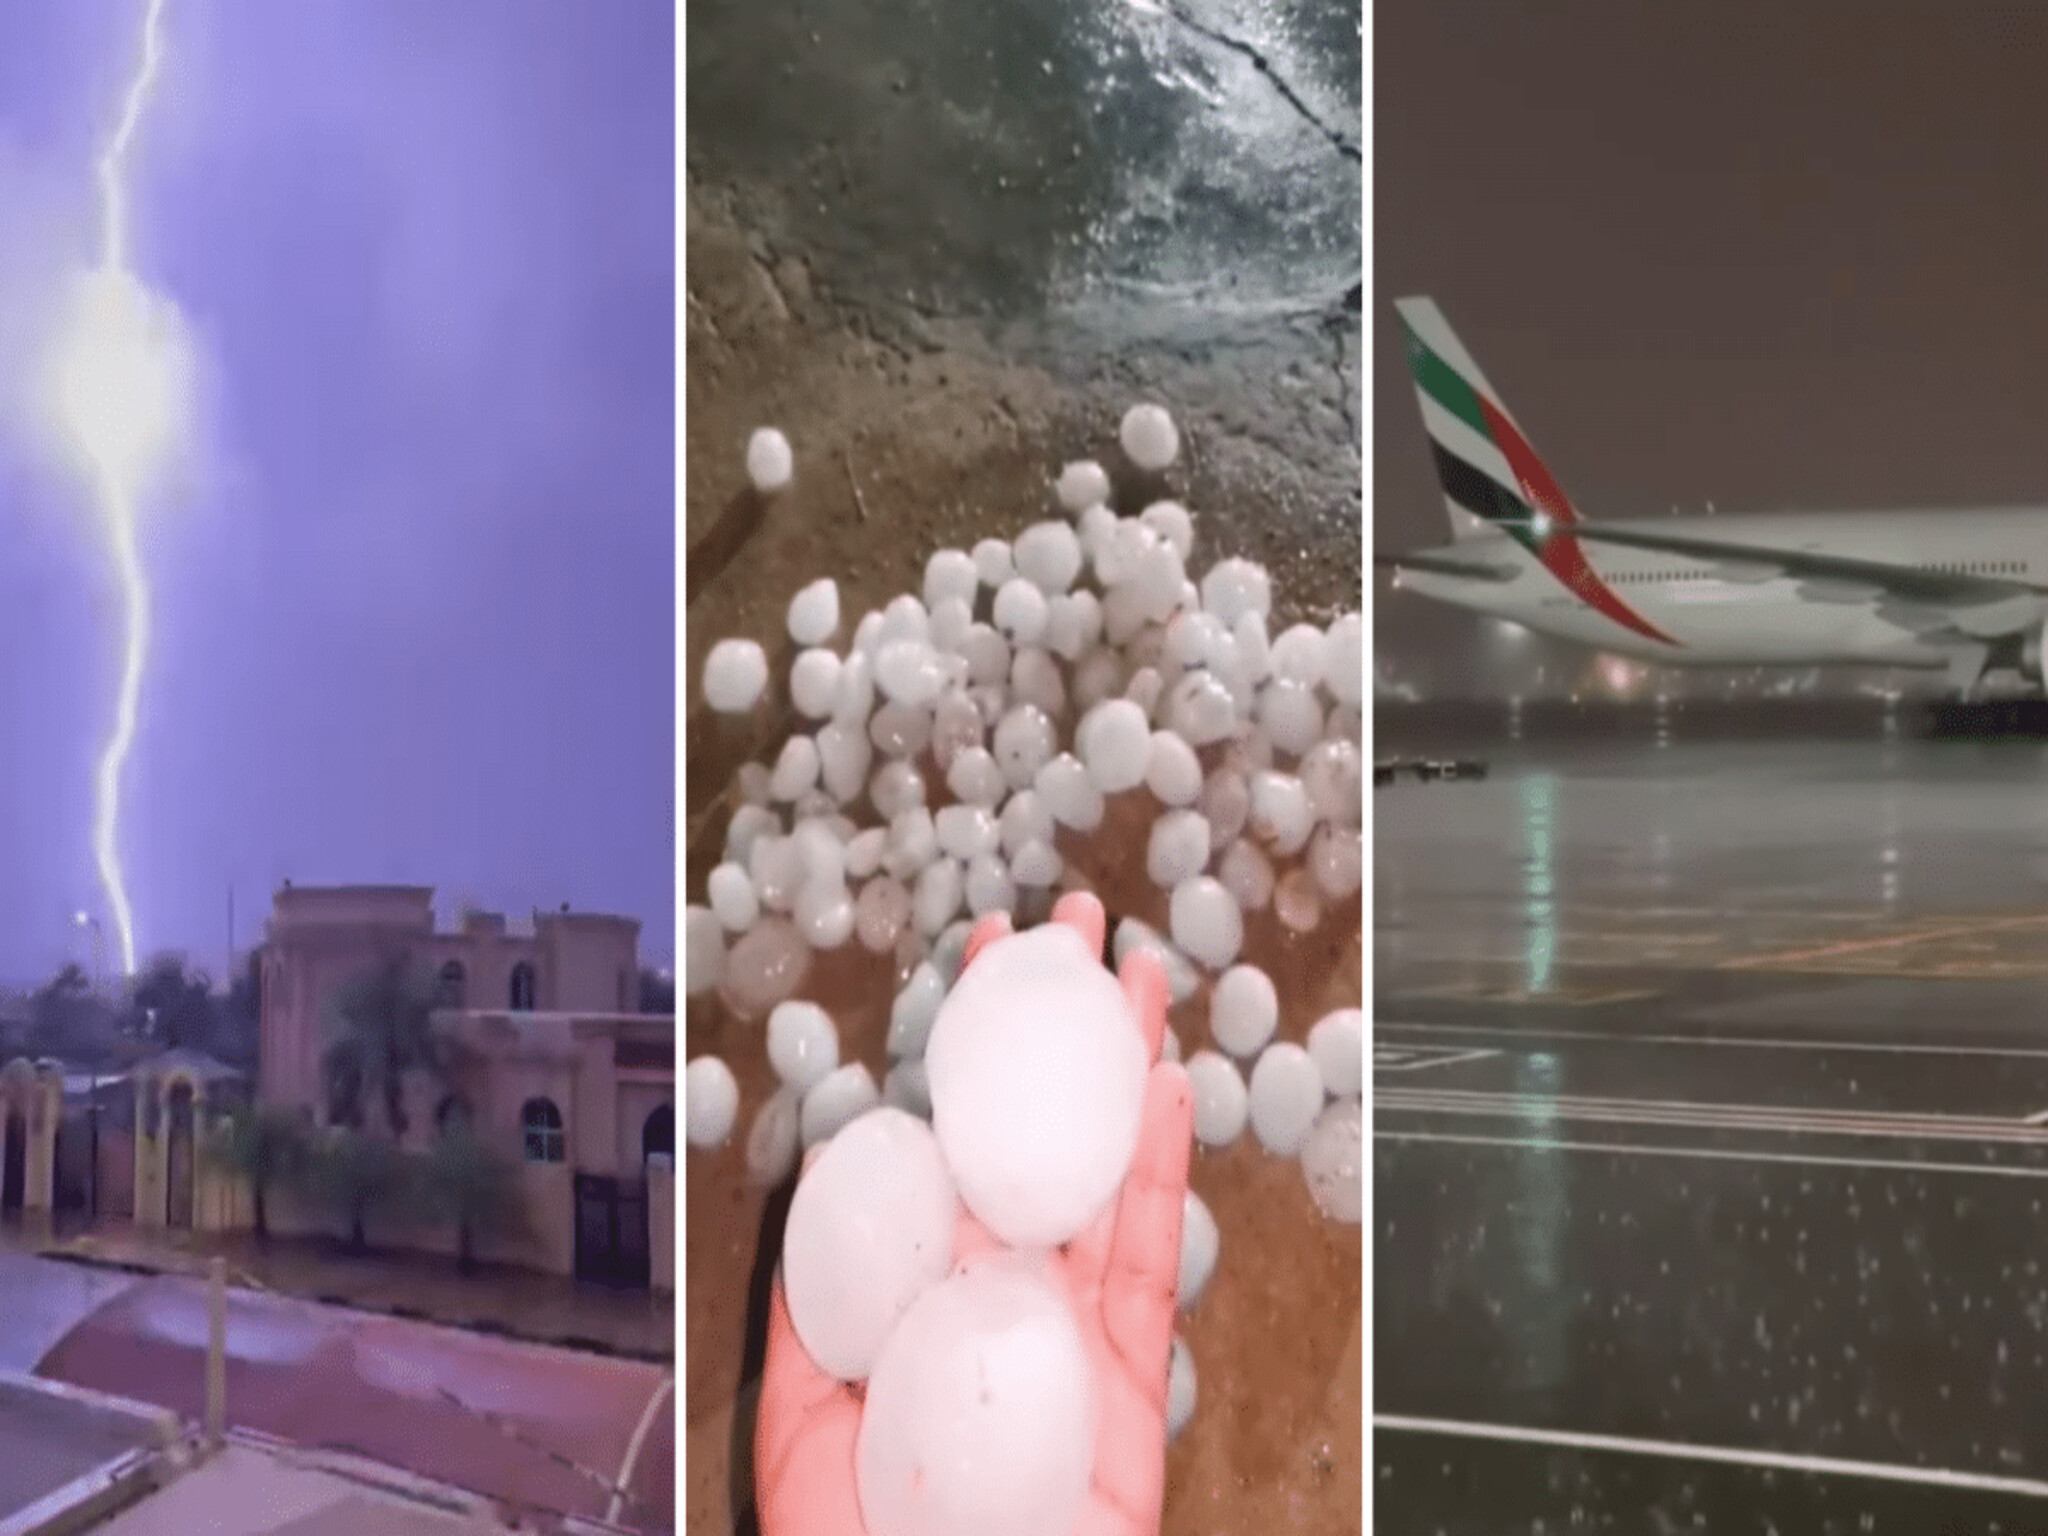 شركات إماراتية تعلن إيقاف خدماتها مؤقتا بسبب العاصفة